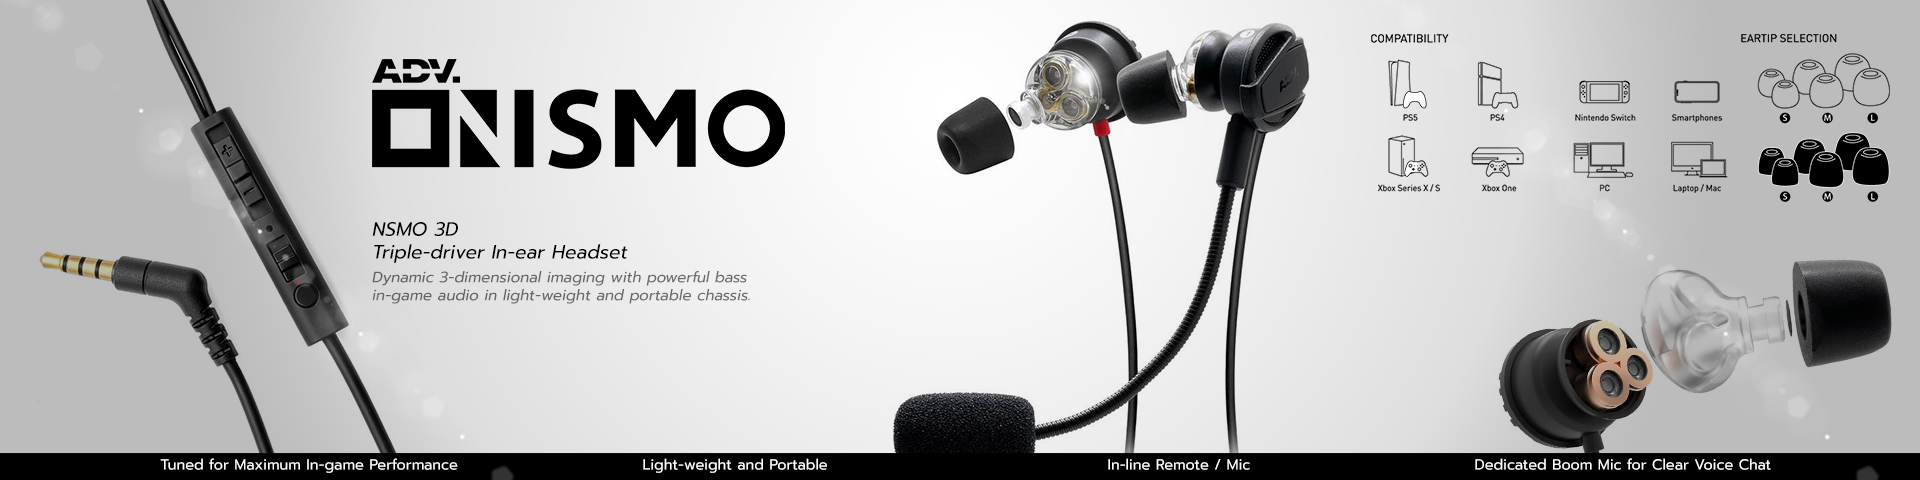 หูฟังเกม NSMO Nismo 3D Triple-driver Gaming In-ear Headset by ADV.